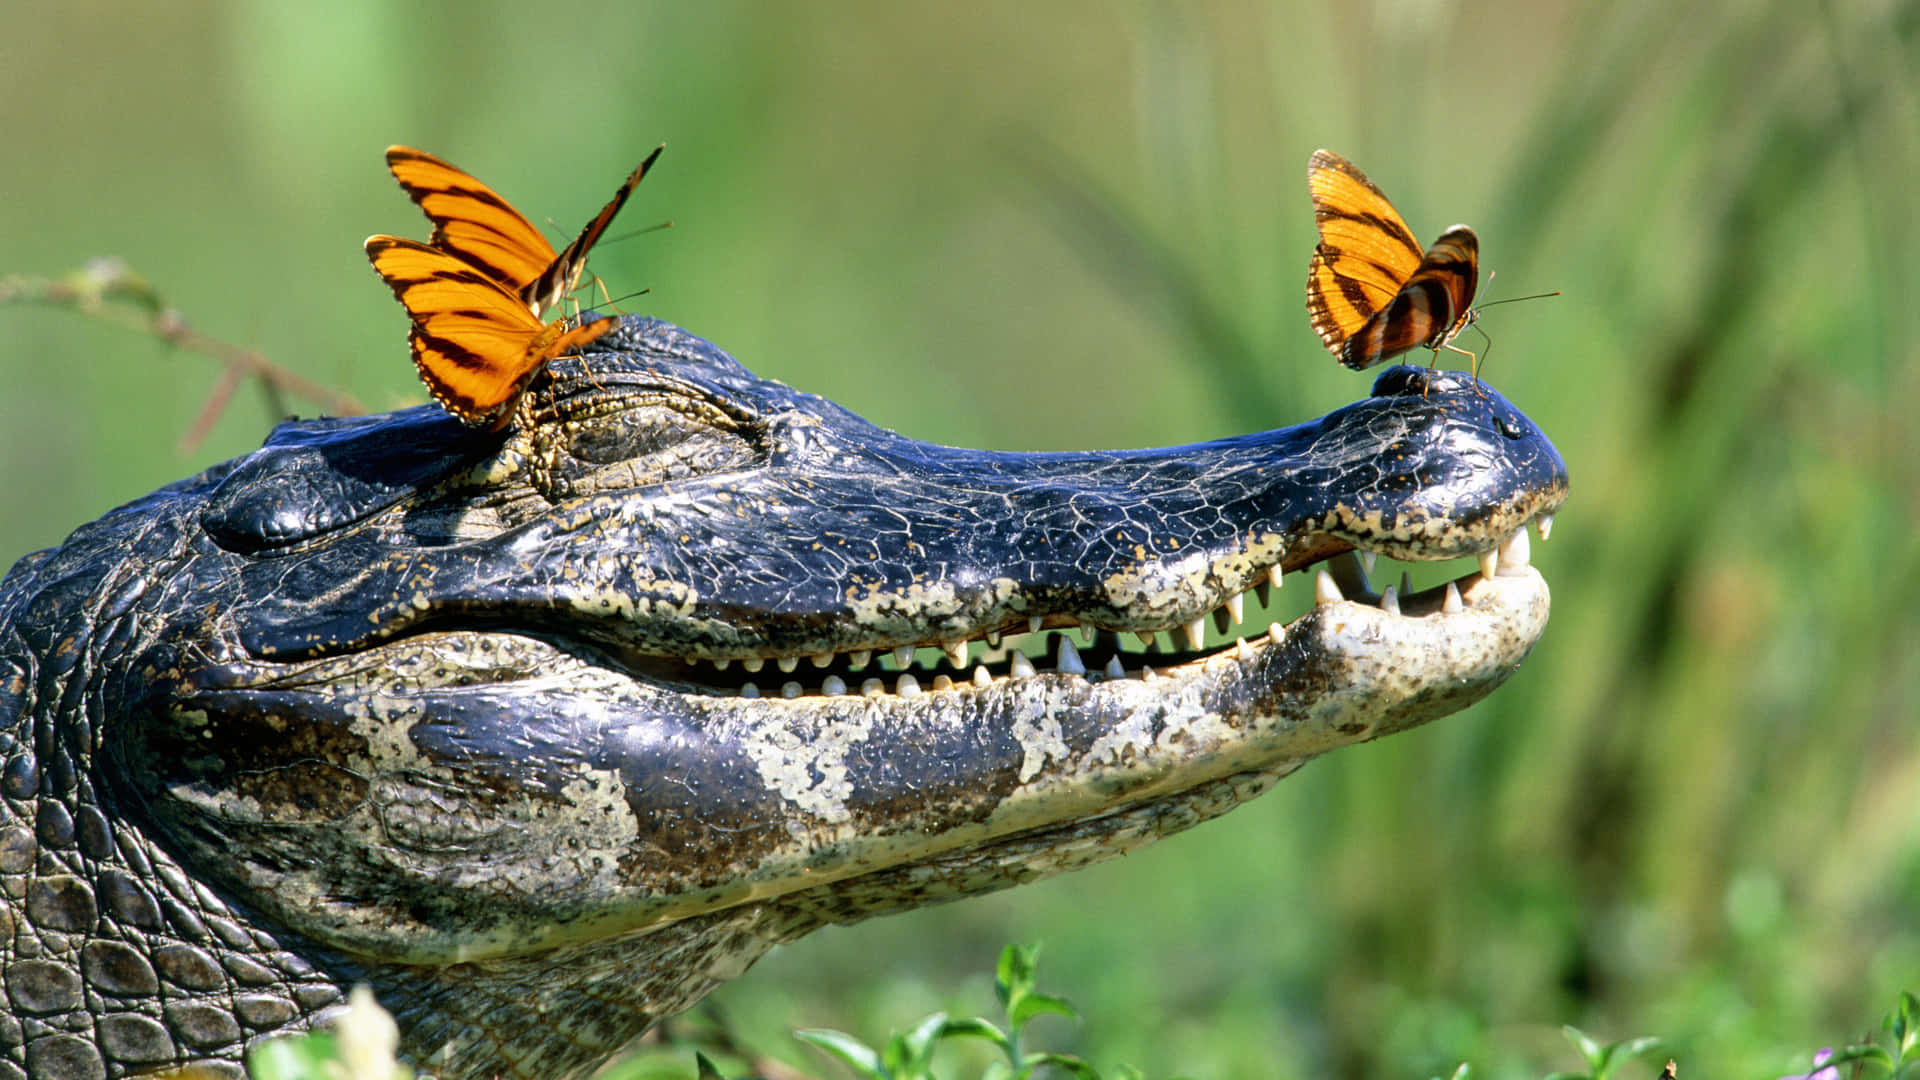 Alligatorligger Och Solar Sig I Den Varma Solen